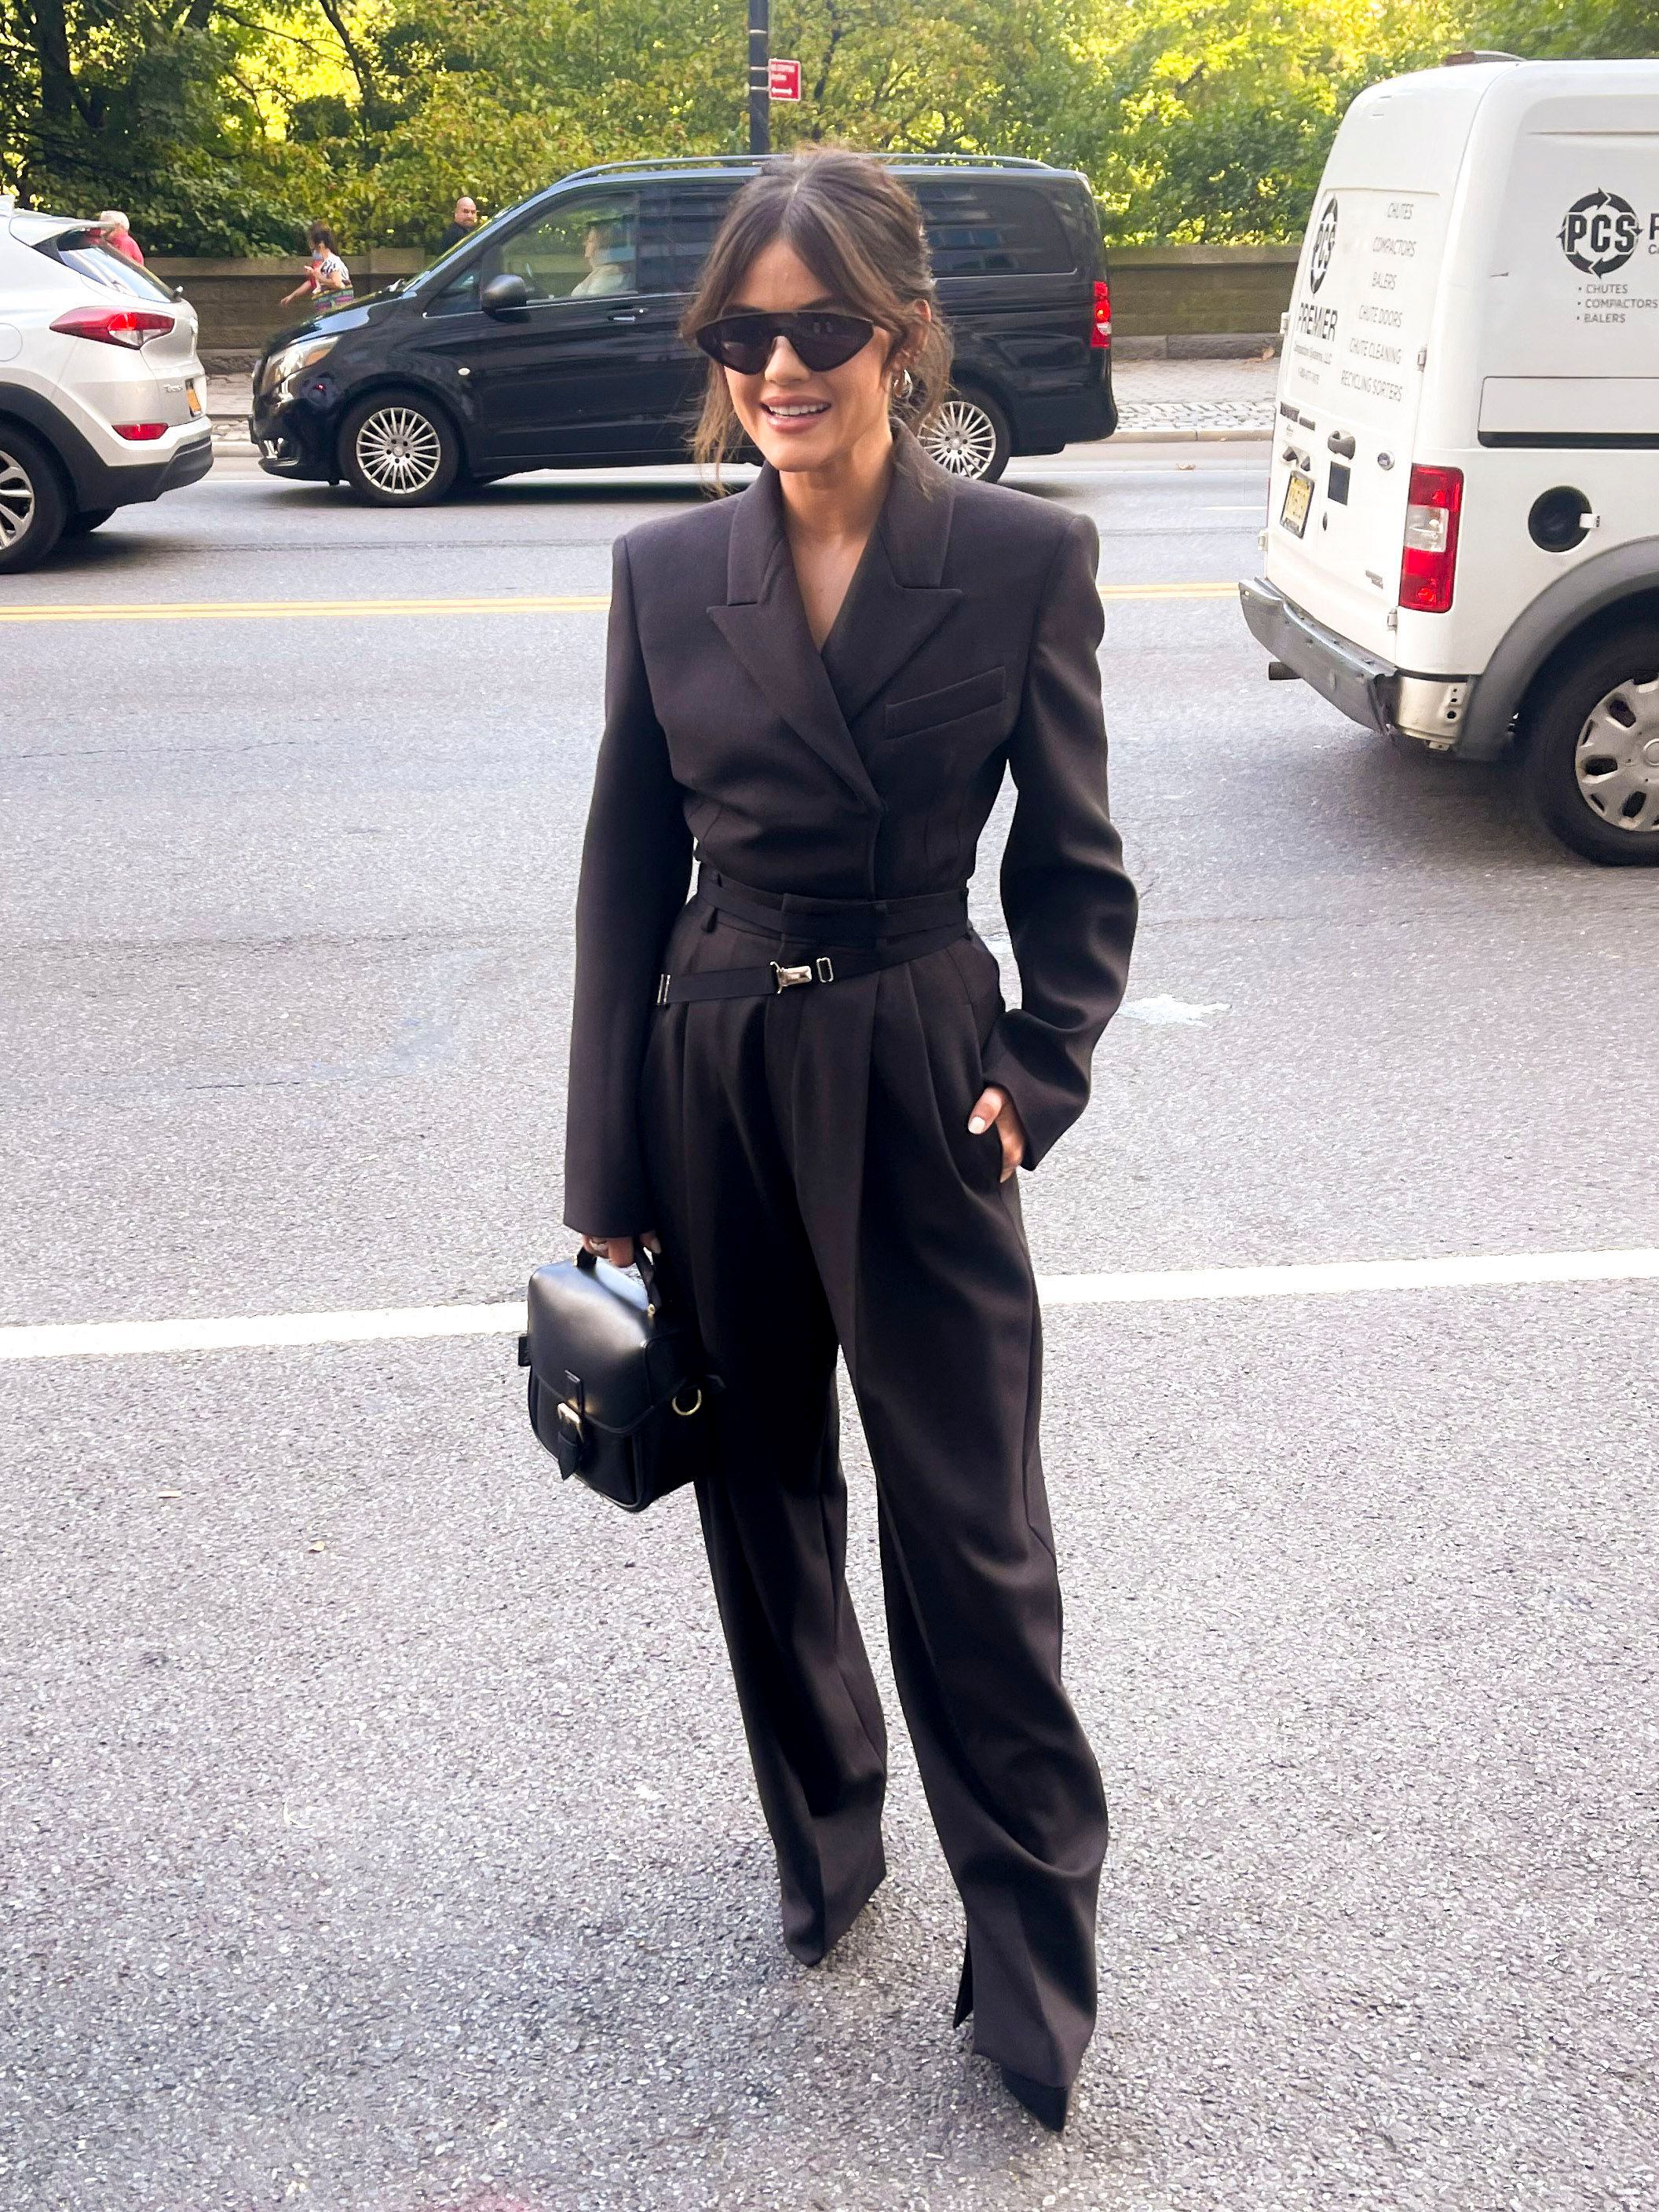 Lucy Hale asistió a un evento exclusivo de moda en Nueva York. Para ello, lució un look total black de saco y pantalón sastrero. Además, llevó lentes de sol y una cartera de cuero (The Grosby Group)